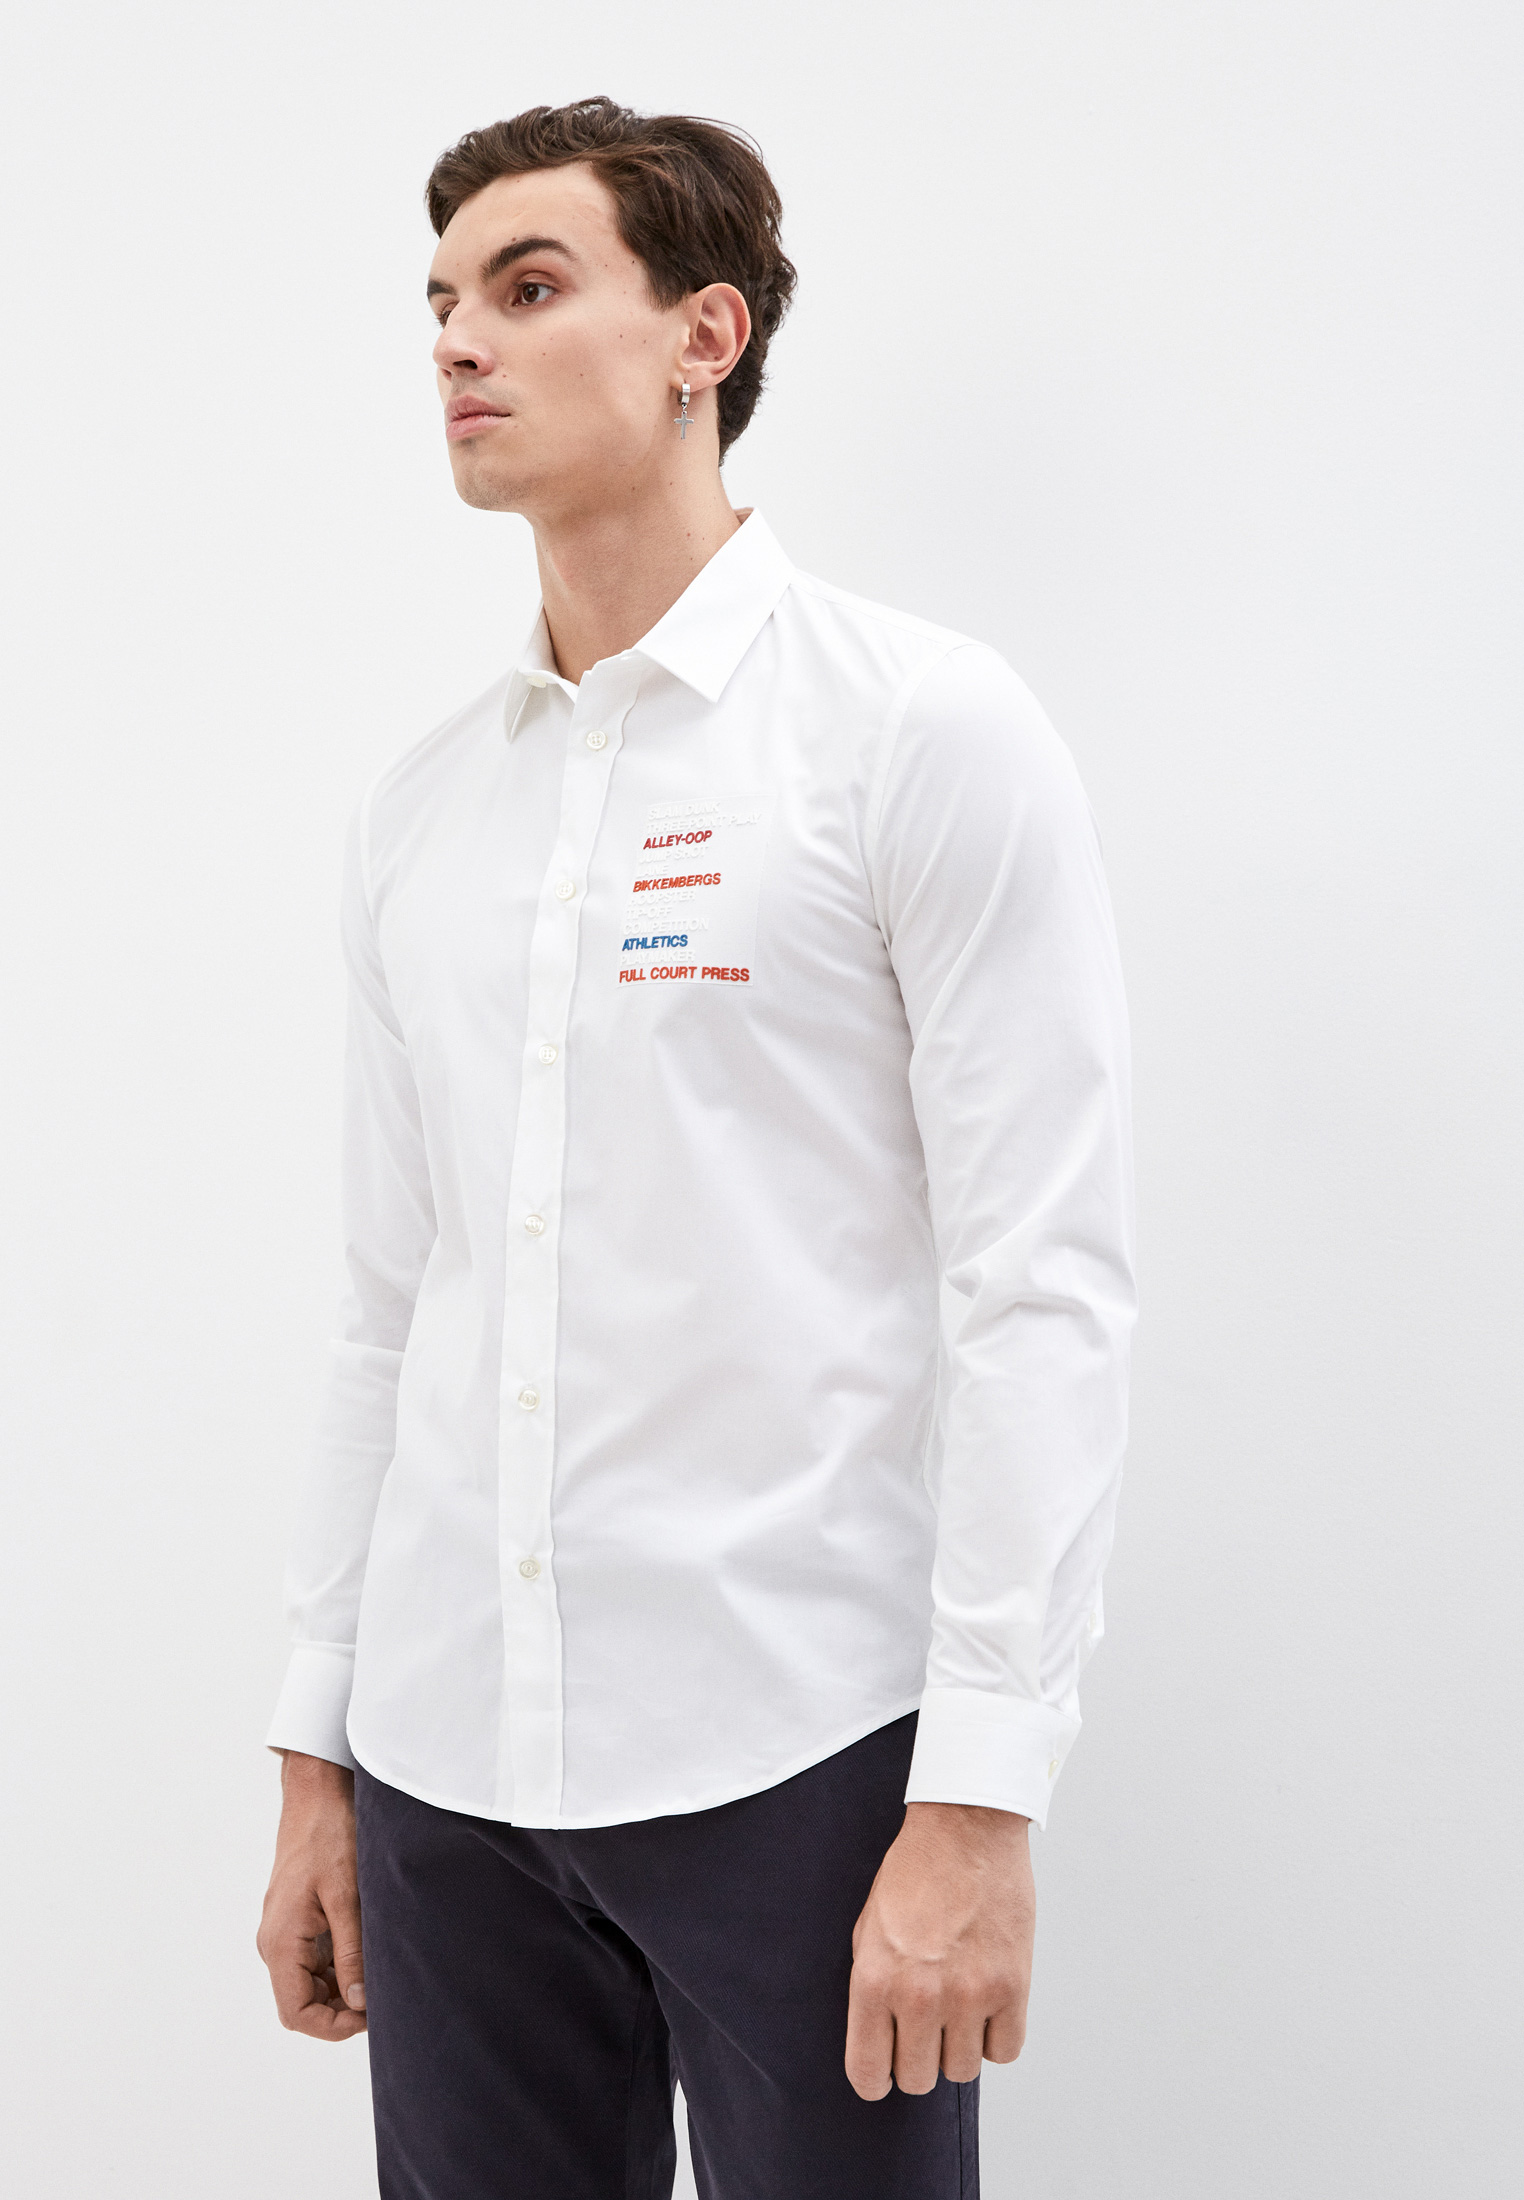 Рубашка с длинным рукавом Bikkembergs (Биккембергс) C C 009 80 S 2931: изображение 6